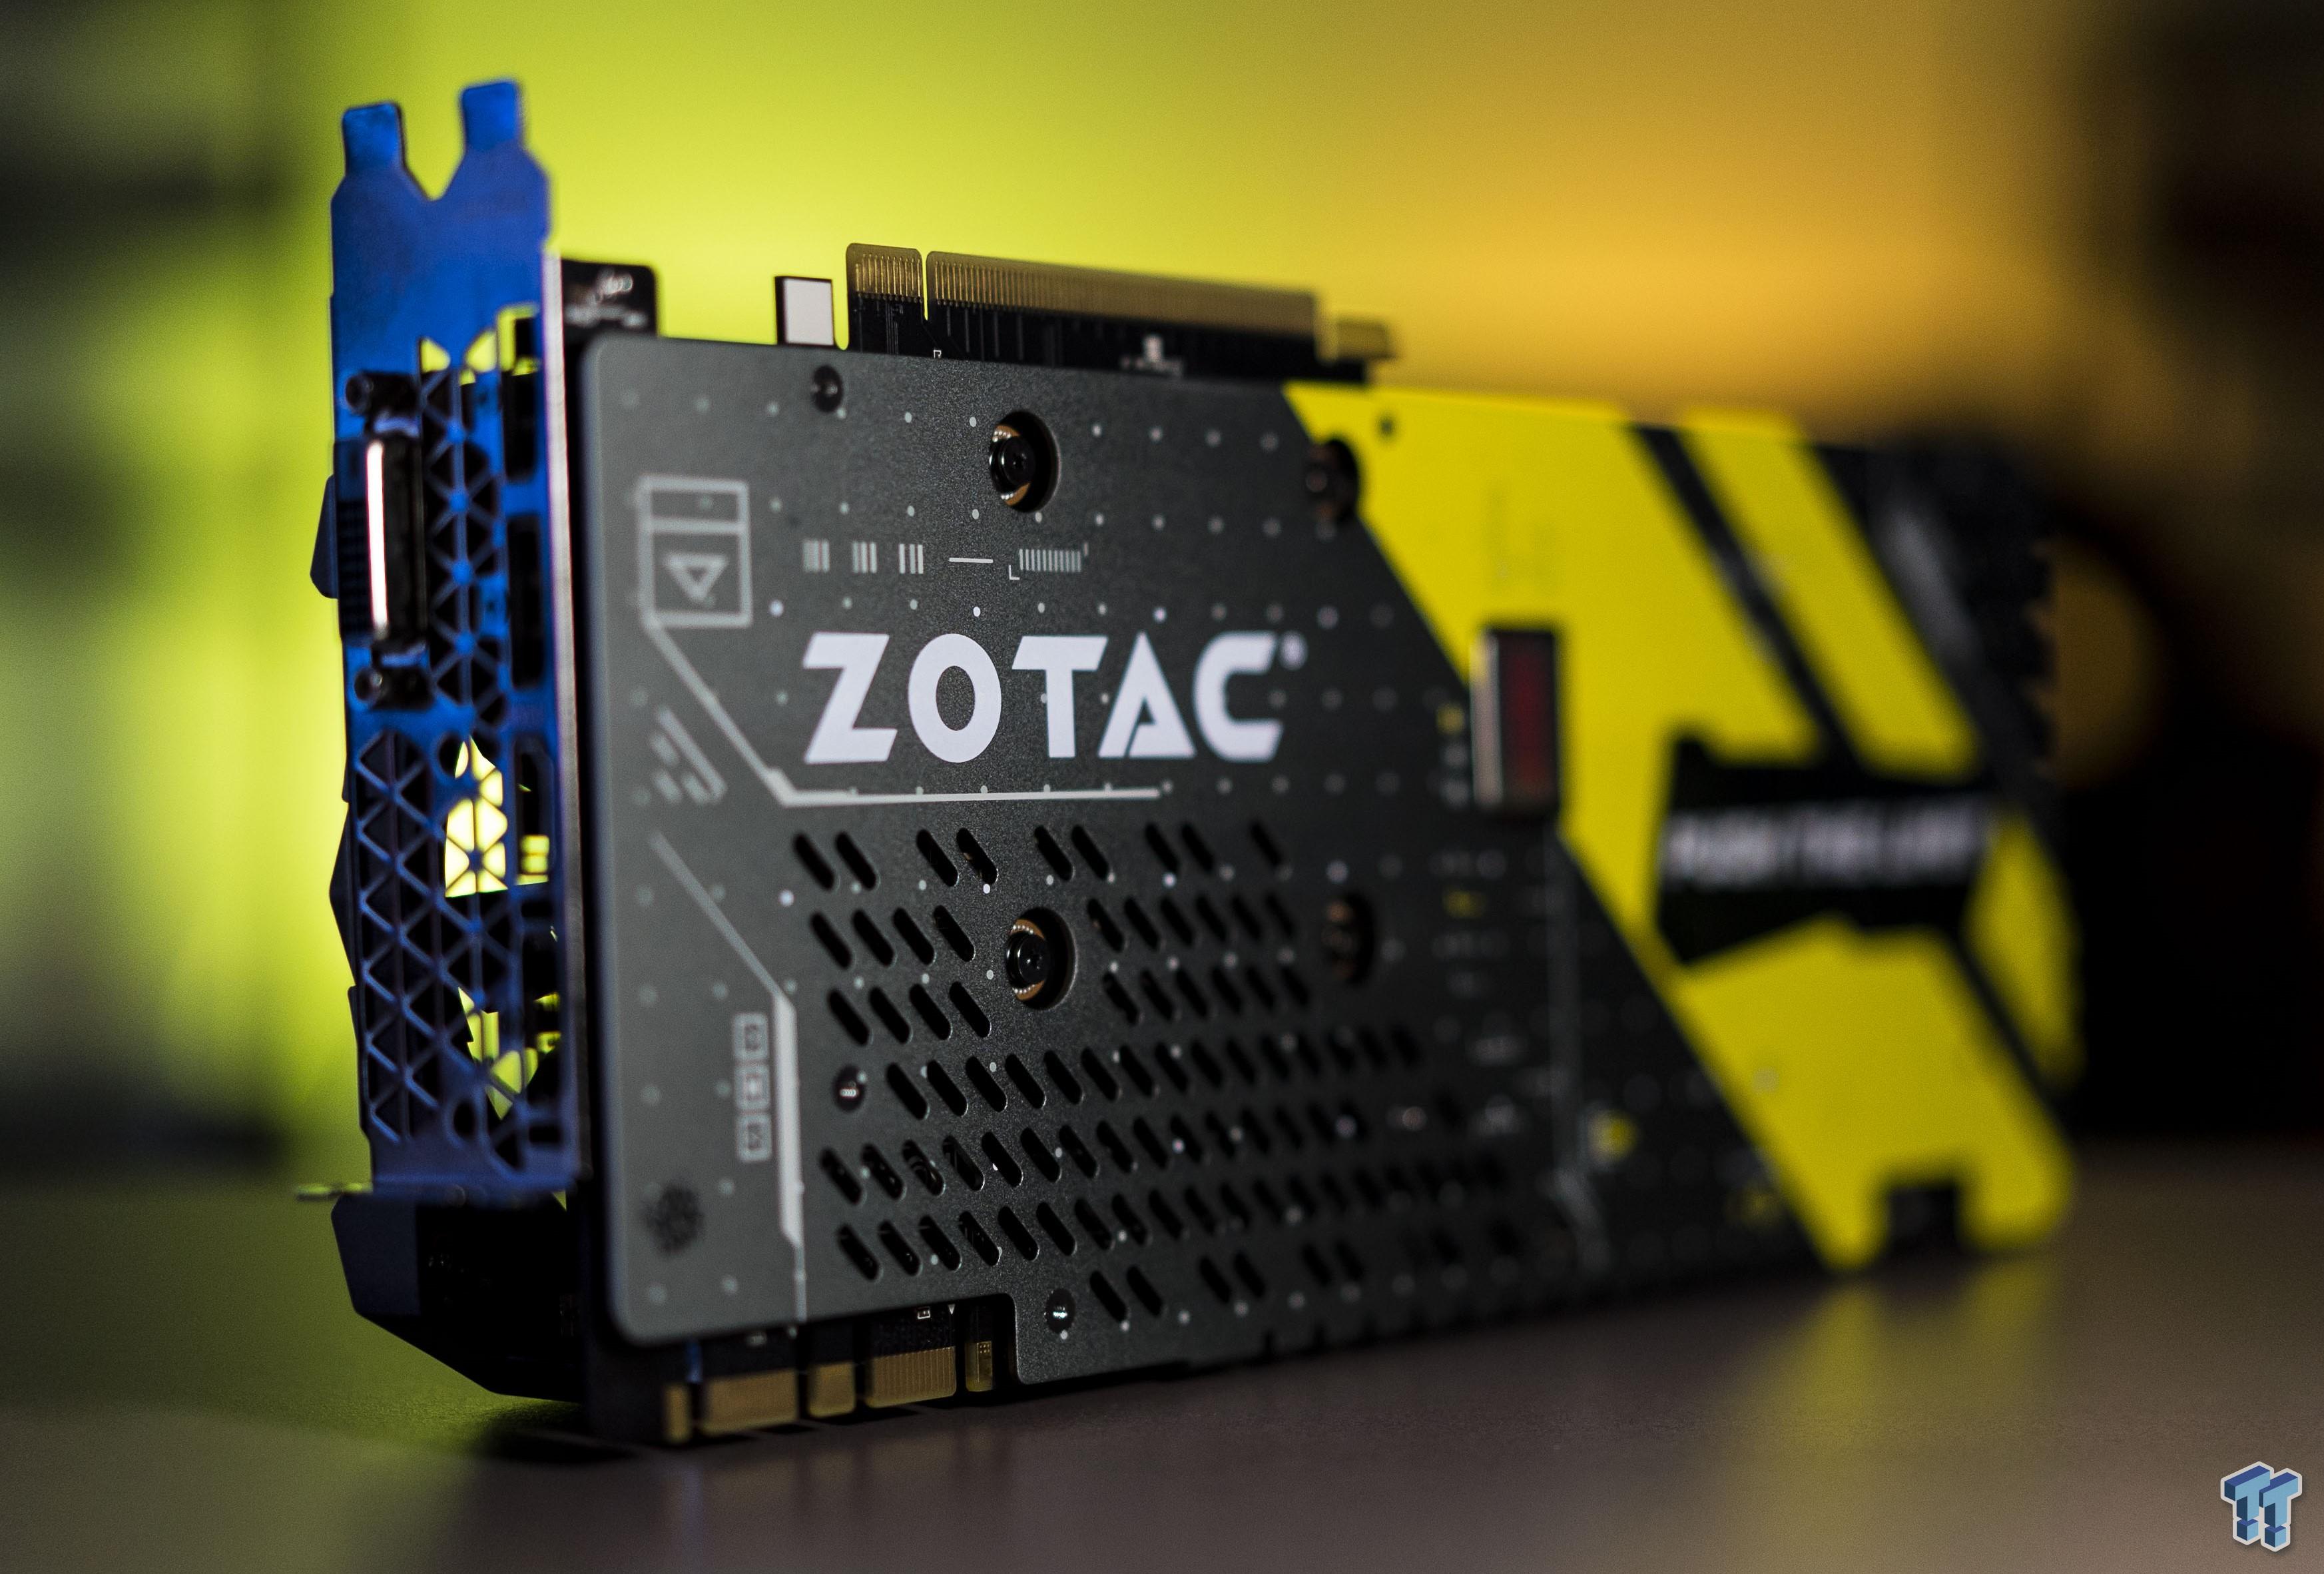 ZOTAC GeForce GTX 1080 AMP! Extreme - The Fastest GTX 1080 Yet!